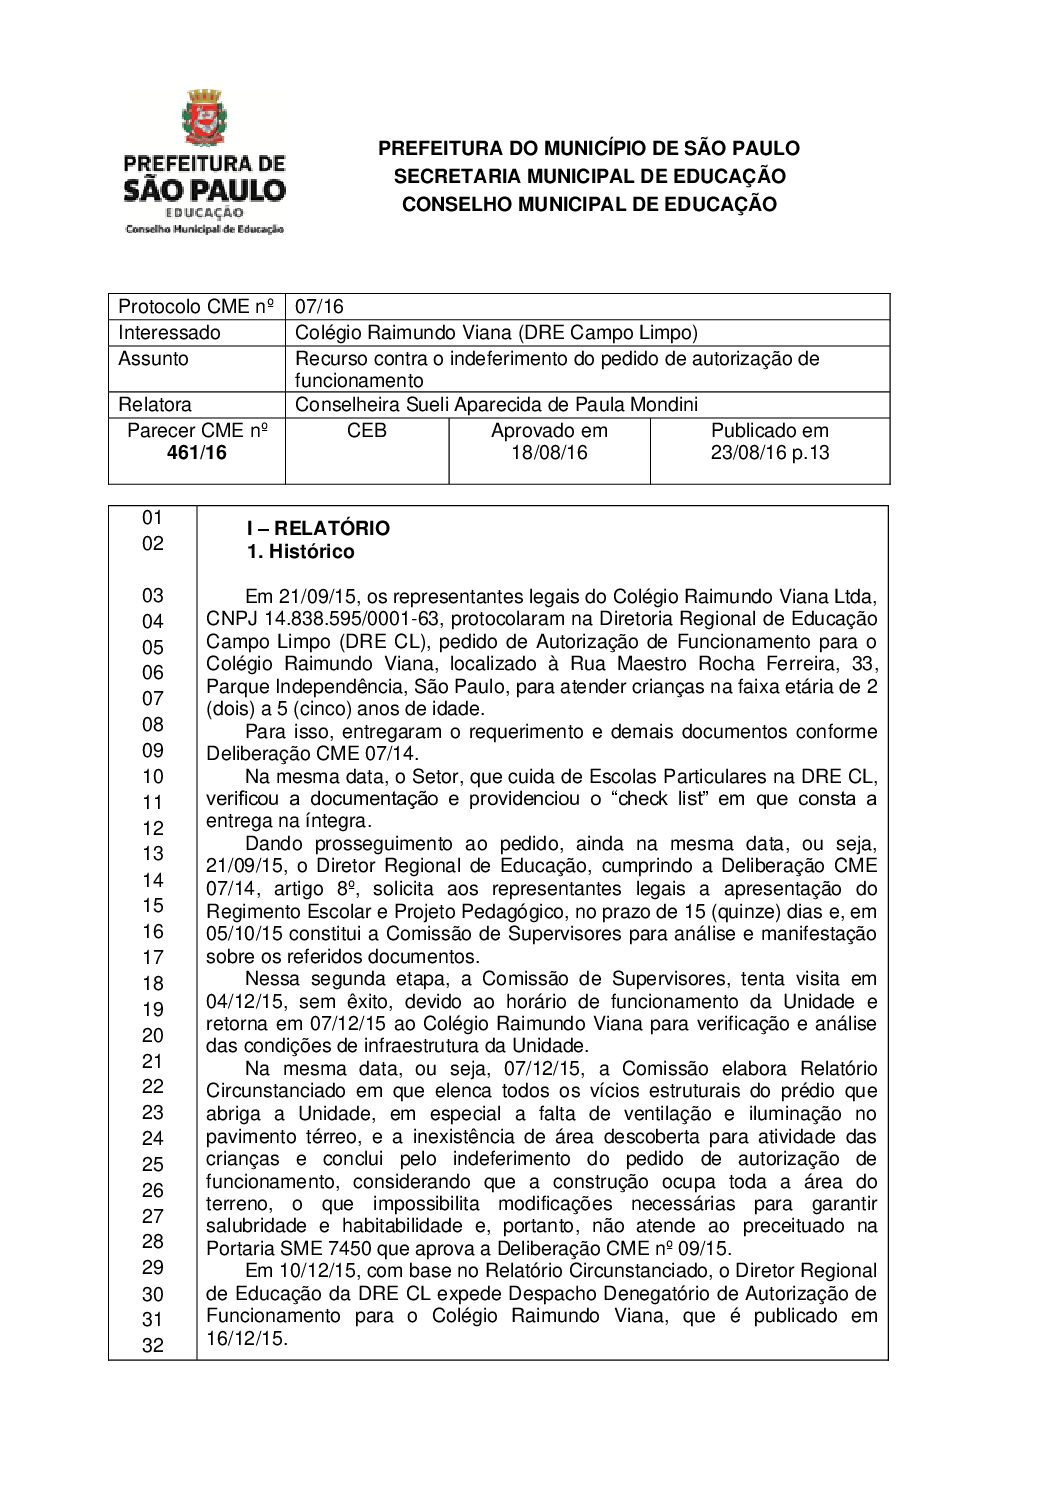 Parecer CME nº 461/2016 - Colégio Raimundo Viana (DRE Campo Limpo) - Recurso contra o indeferimento do pedido de autorização de funcionamento 